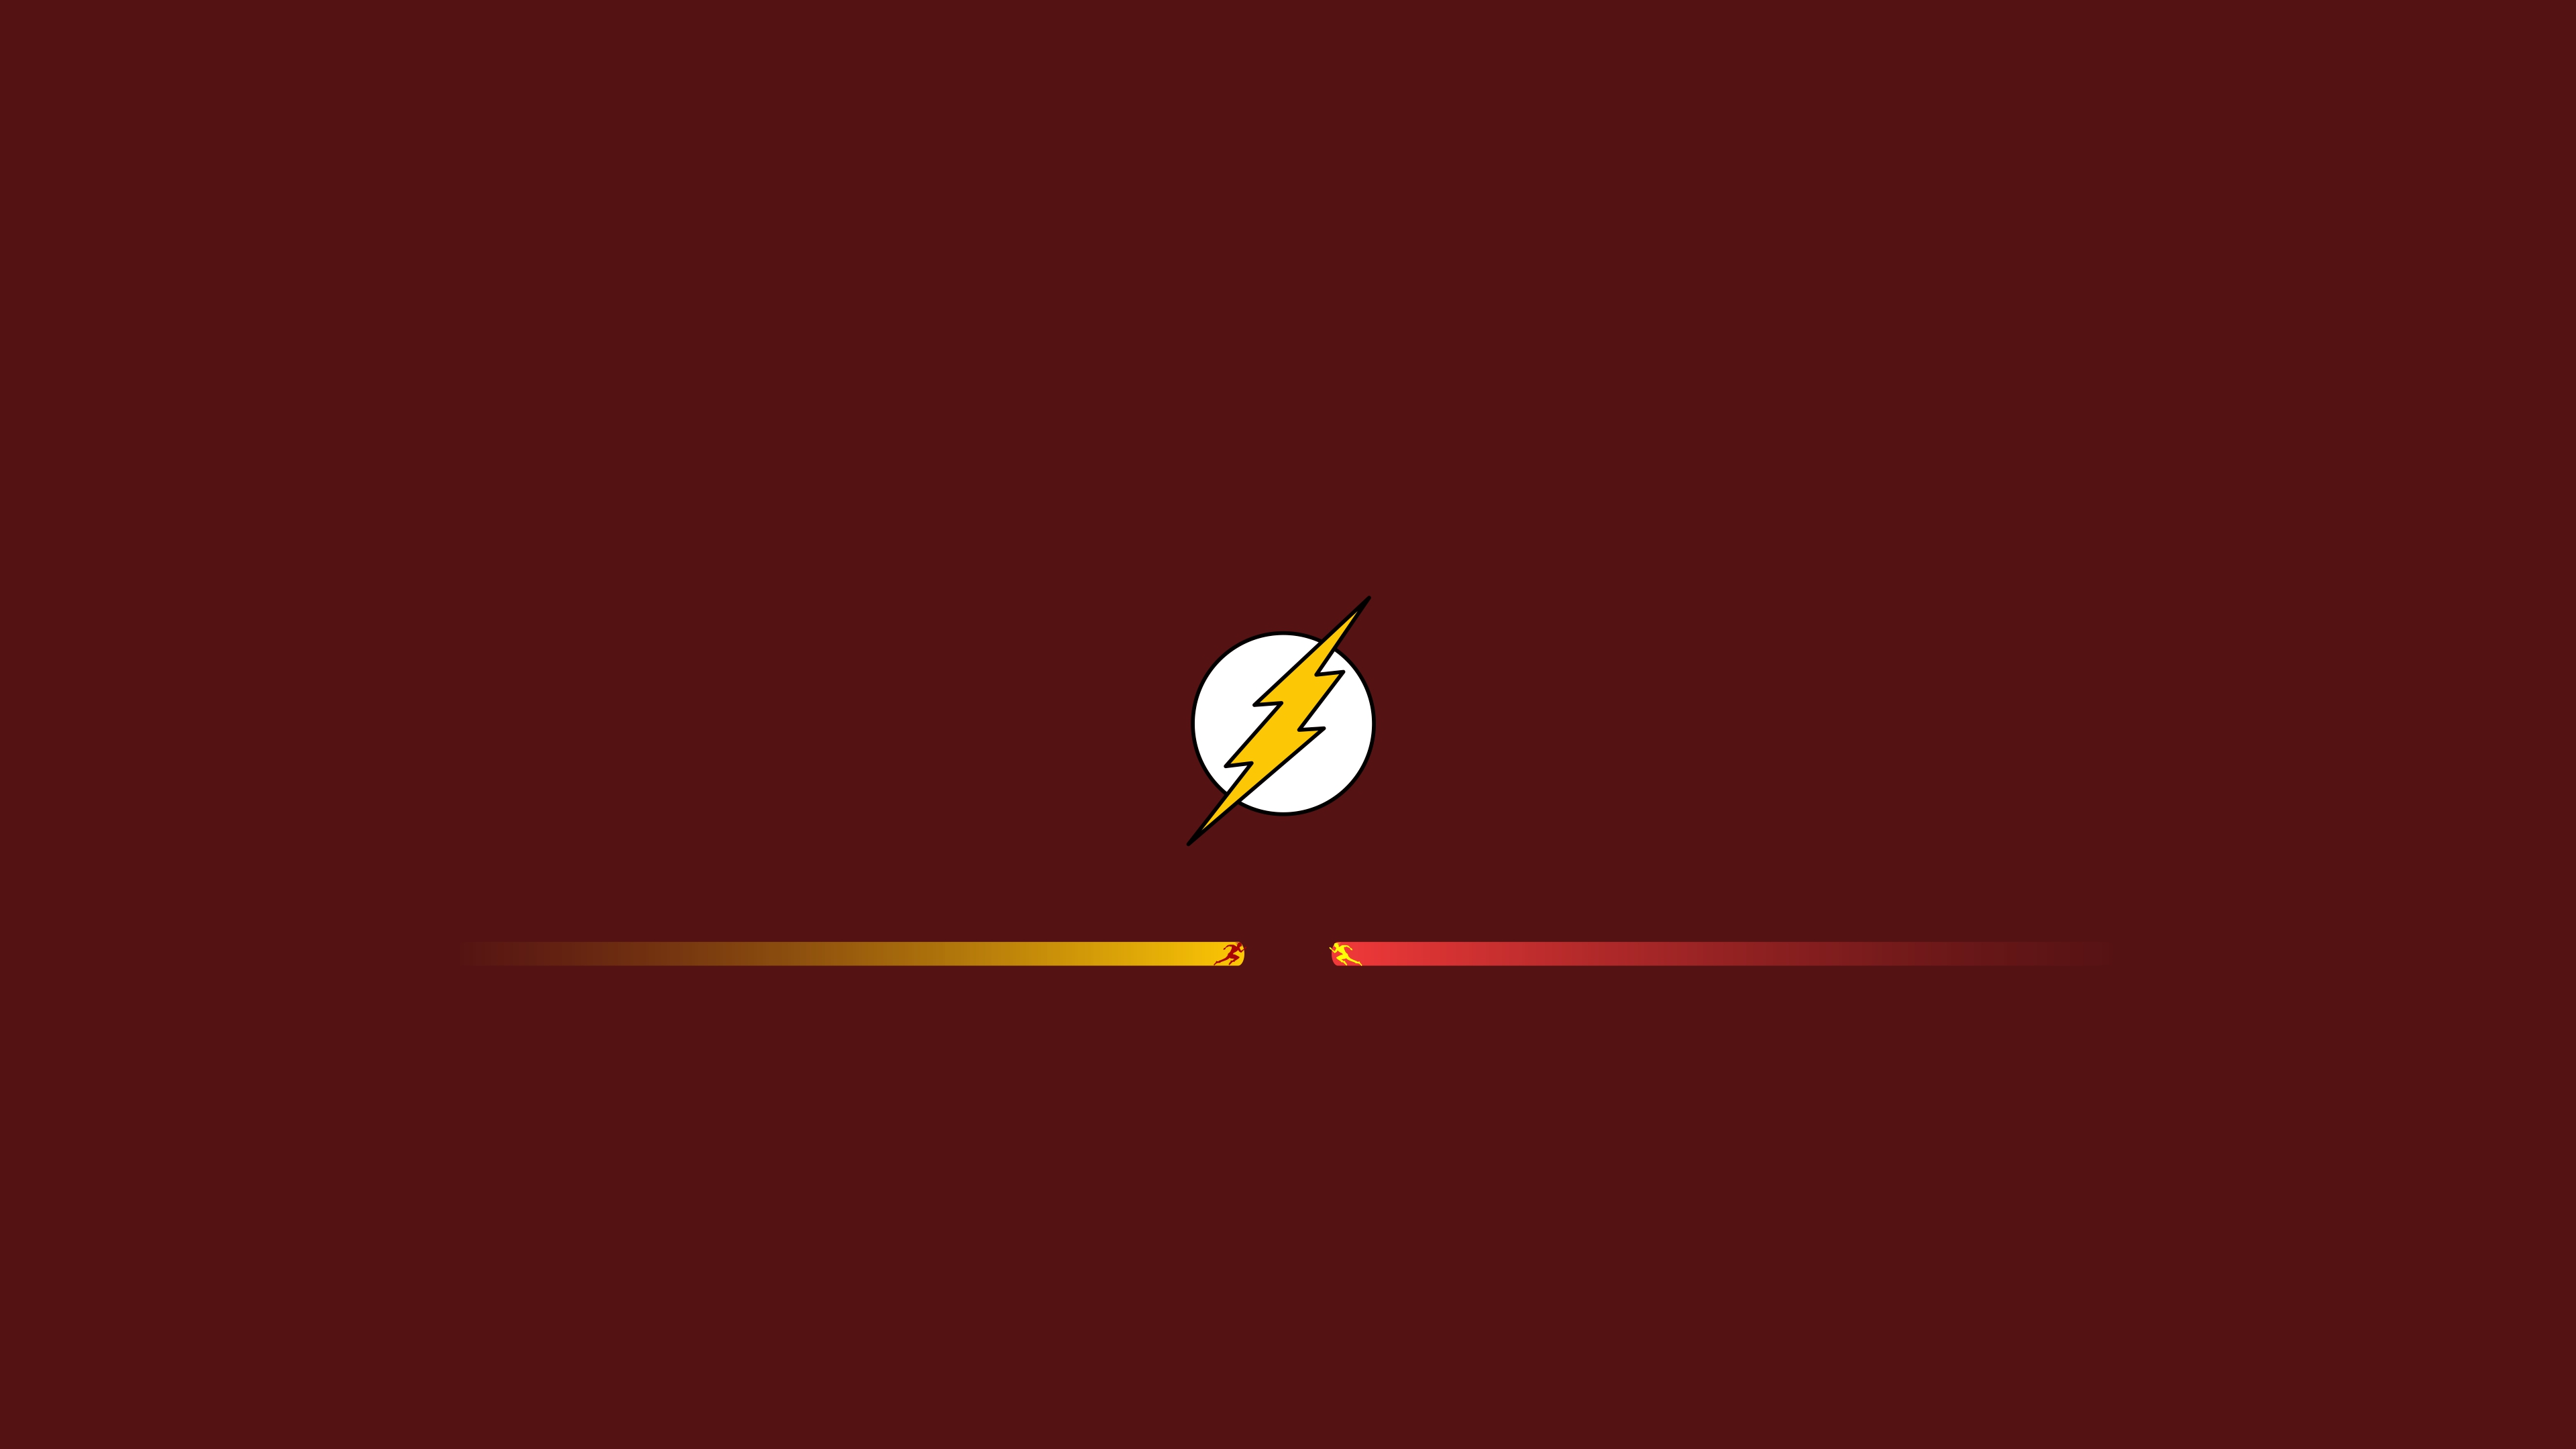 Dc Comics Flash Minimalist Reverse Flash 3840x2160